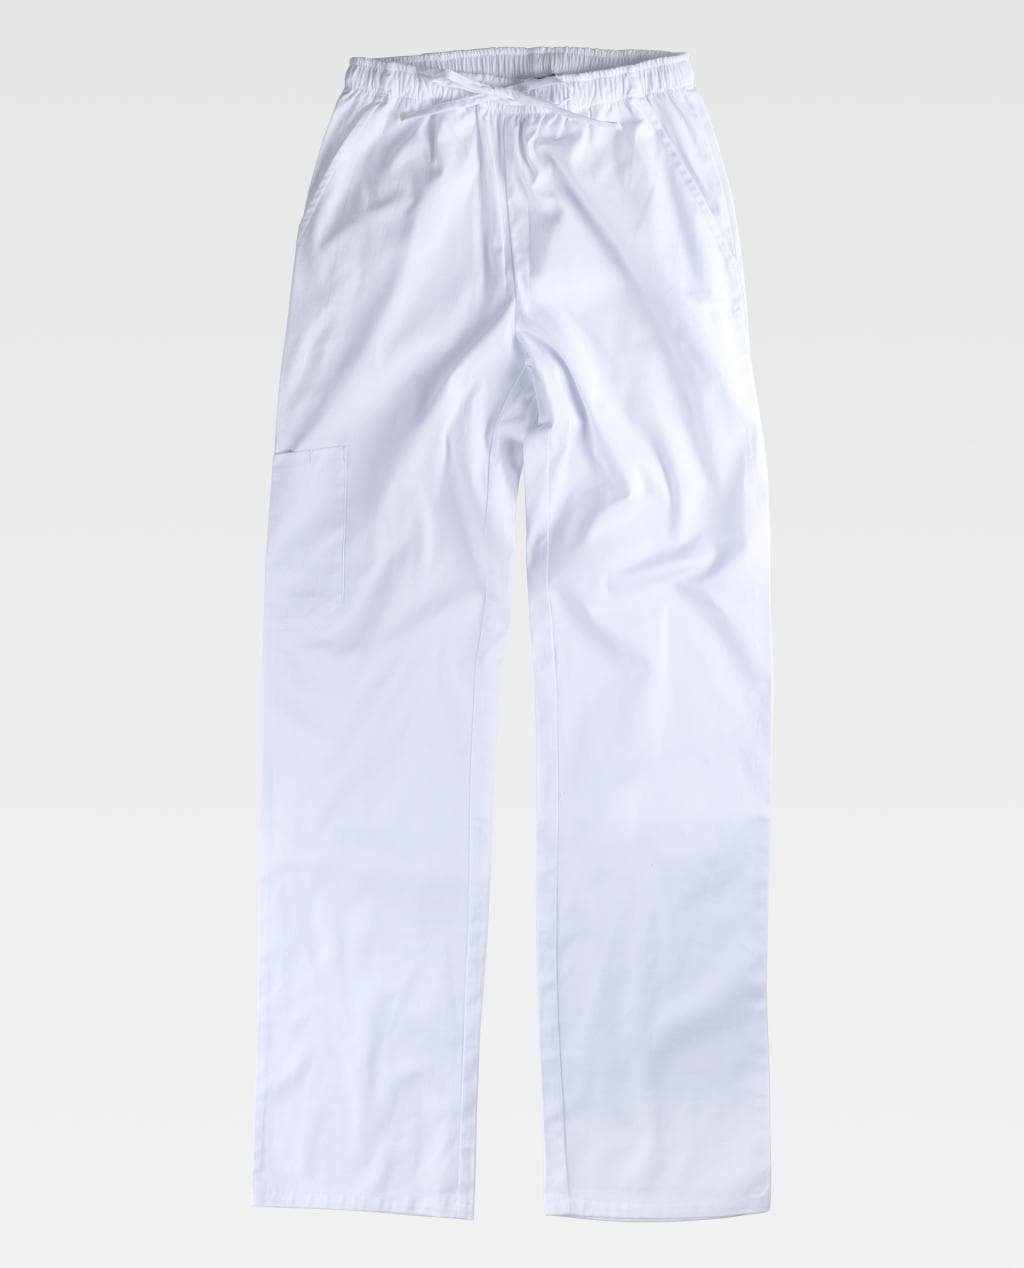 2_kit-pantalone-e-casacca-unisex-elasticizzato.jpg